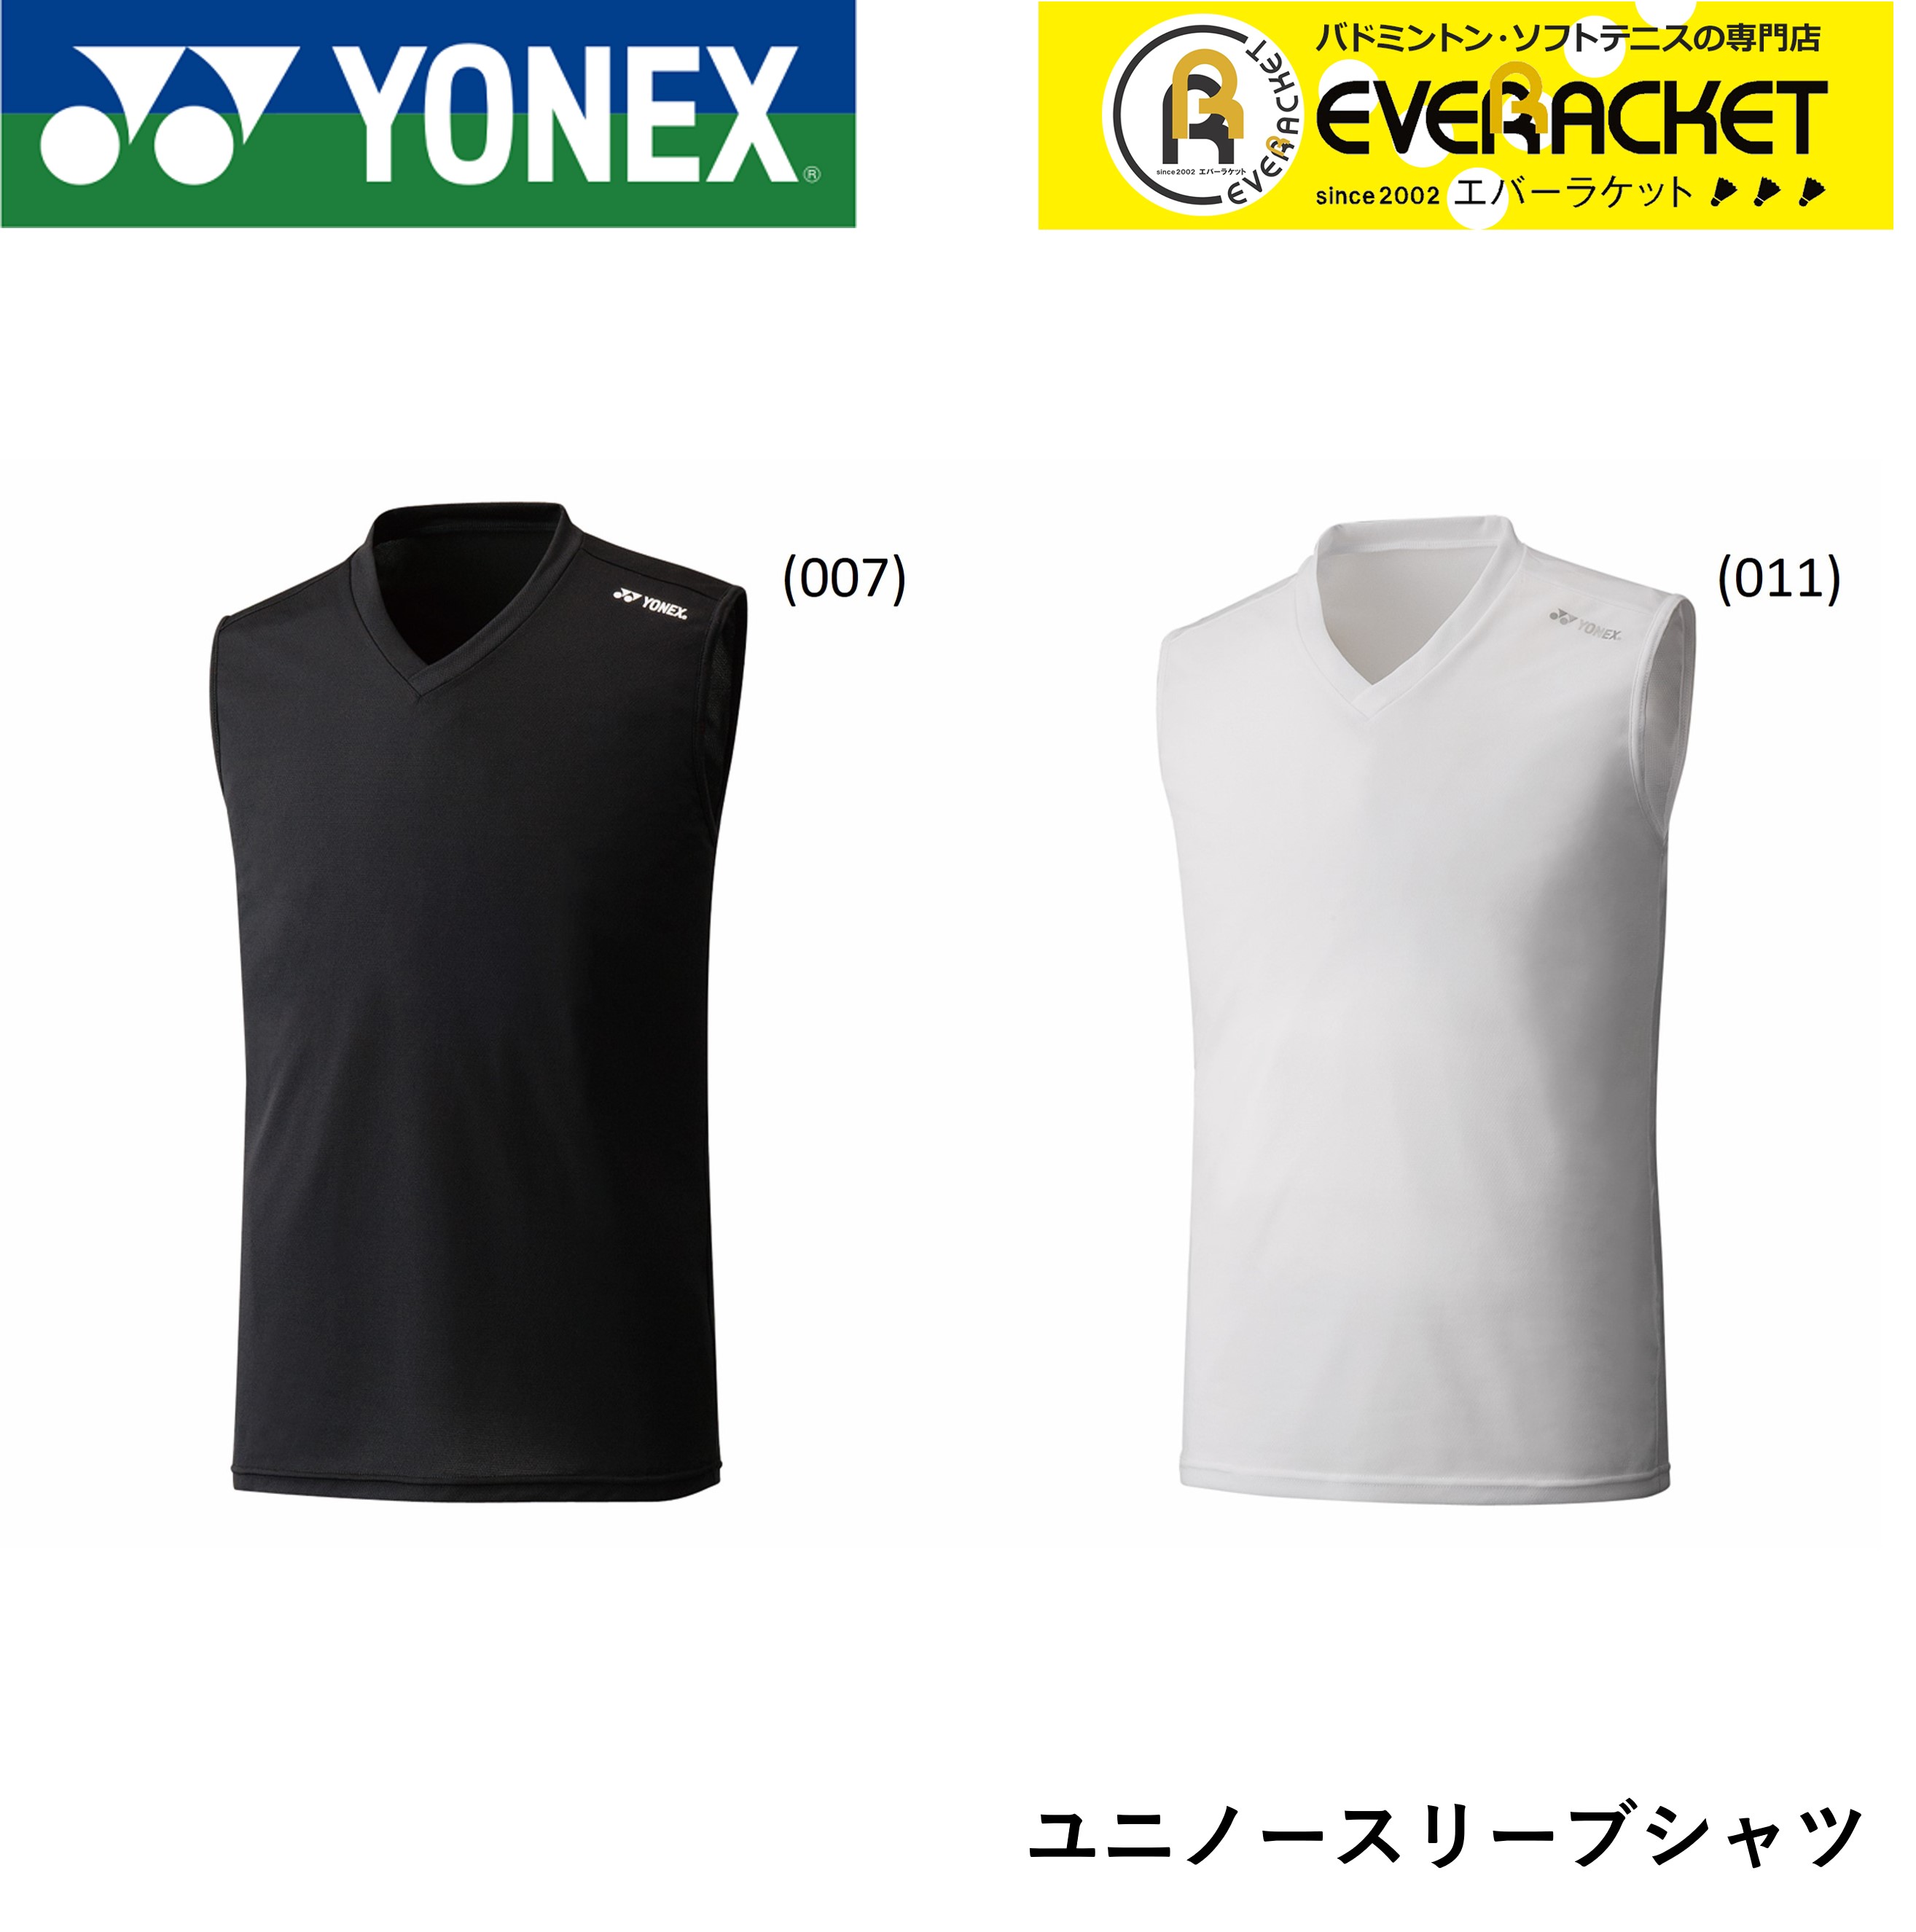 新作 人気 2020年 返品交換不可 YONEX：ユニノースリーブシャツ ポスト投函送料無料 ヨネックス YONEX ウエア 44103 バドミントン ユニノースリーブシャツ テニス